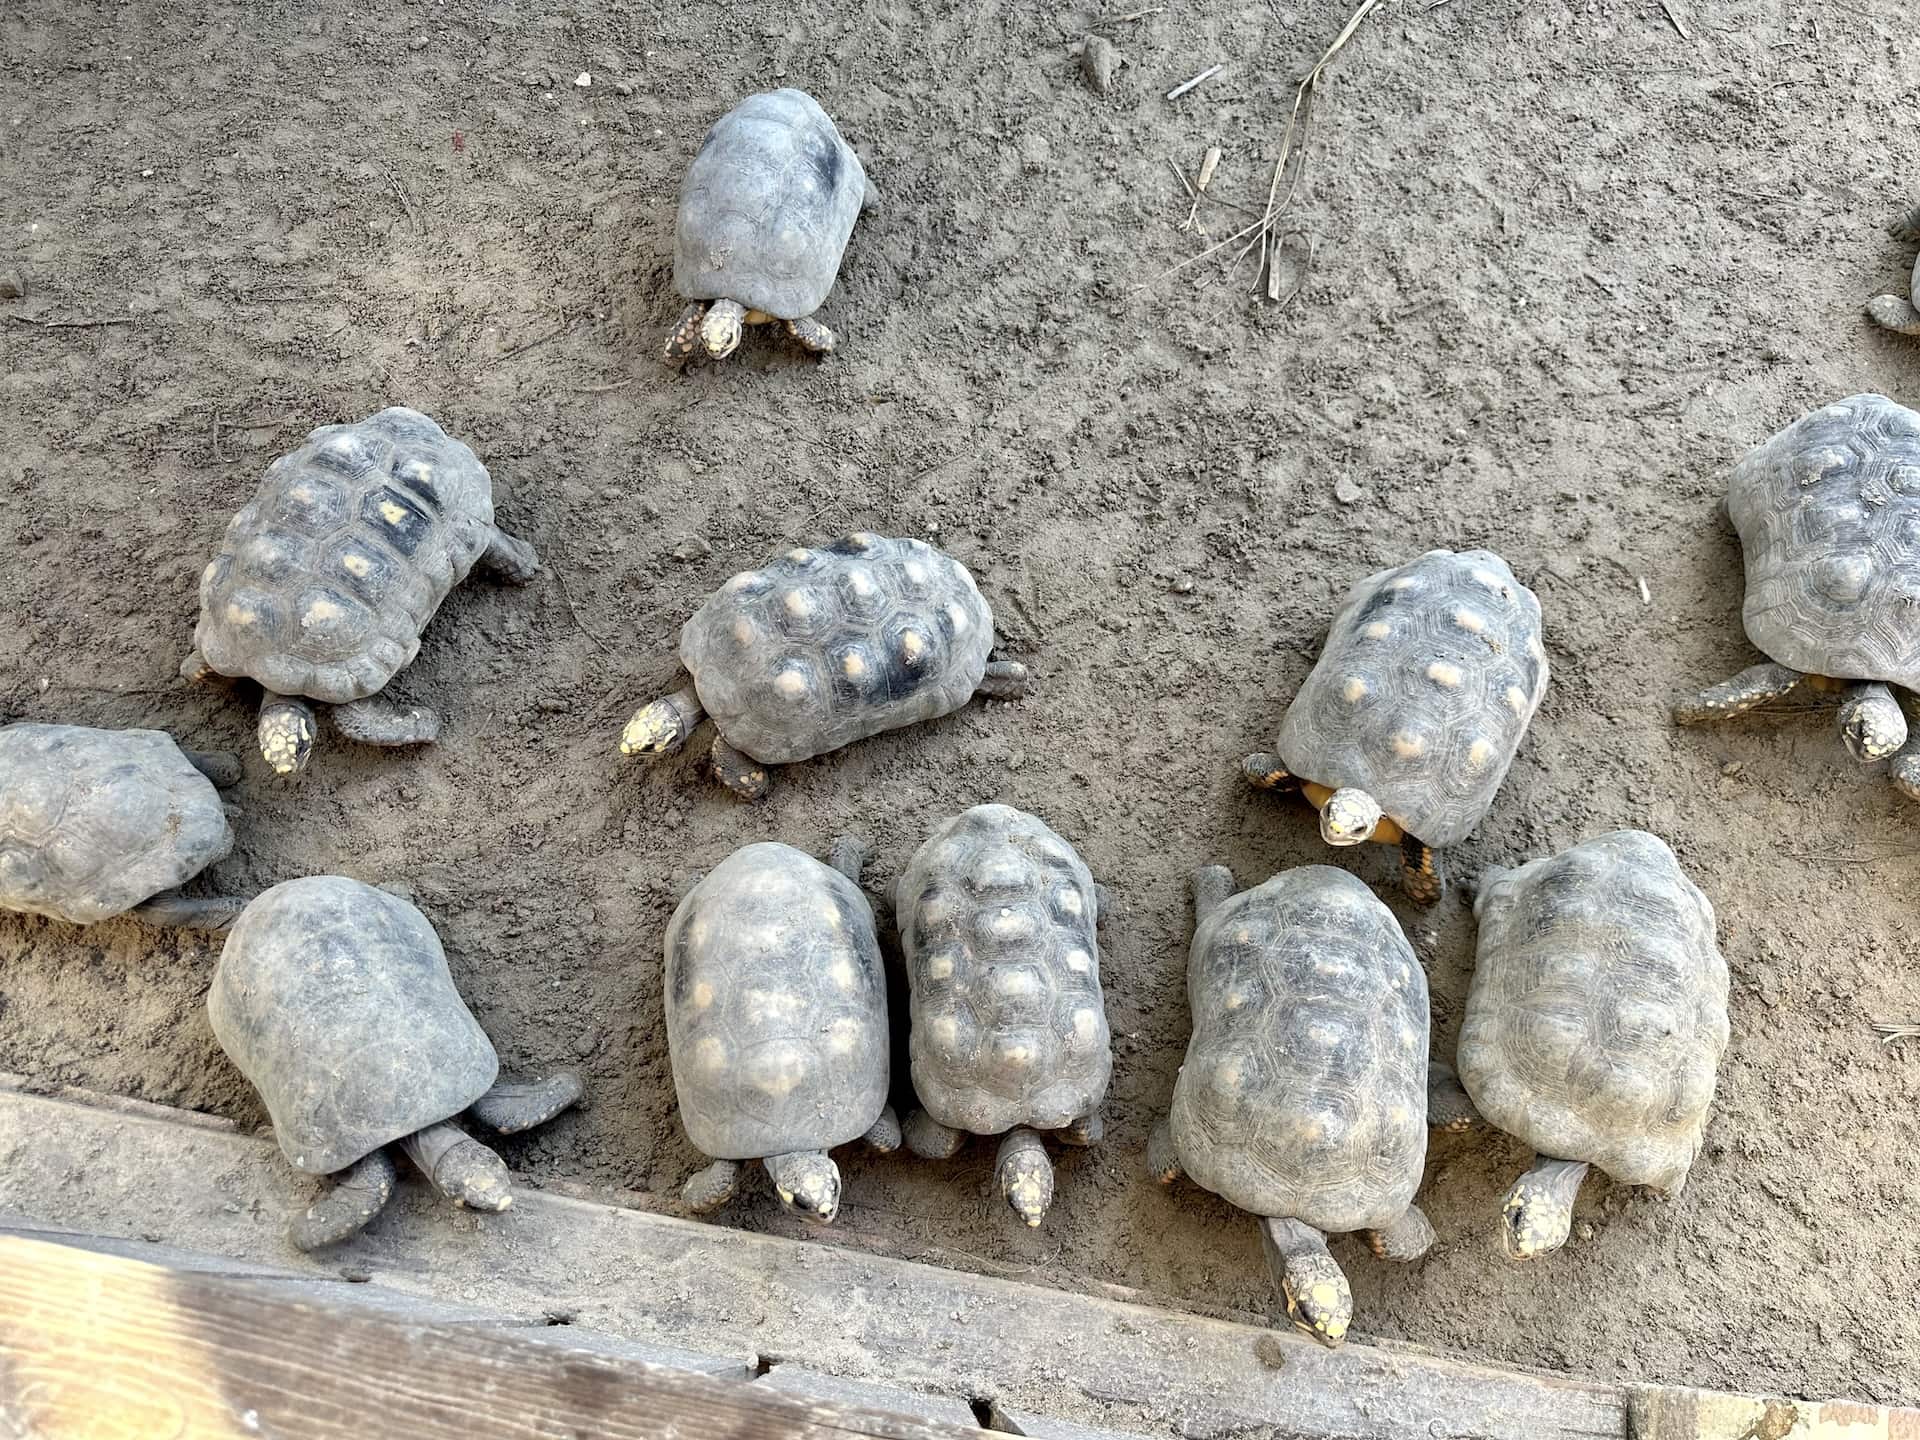 Tortoises at Philip's Animal Garden in Noord, Aruba